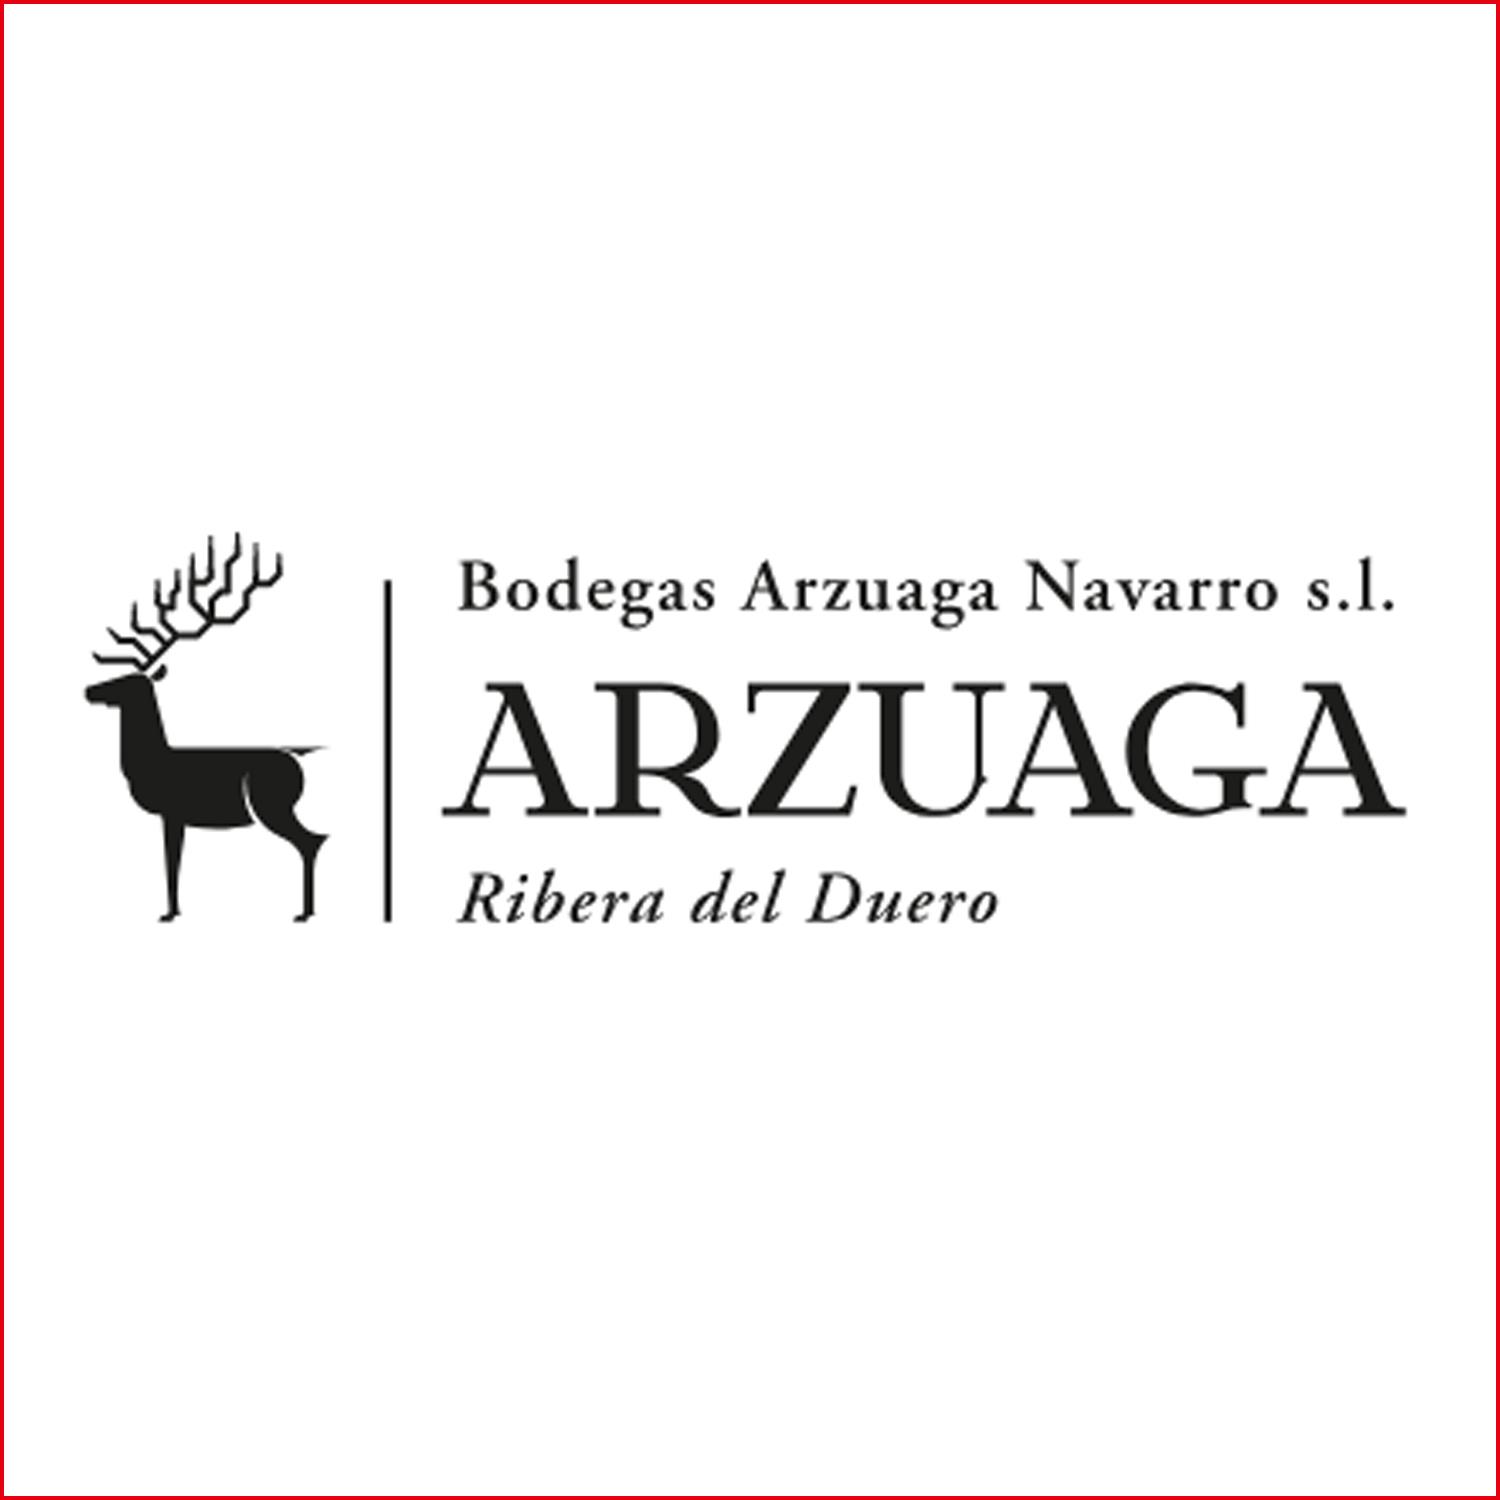 阿蘇亞加納瓦羅 Bodegas Arzuaga Navarro